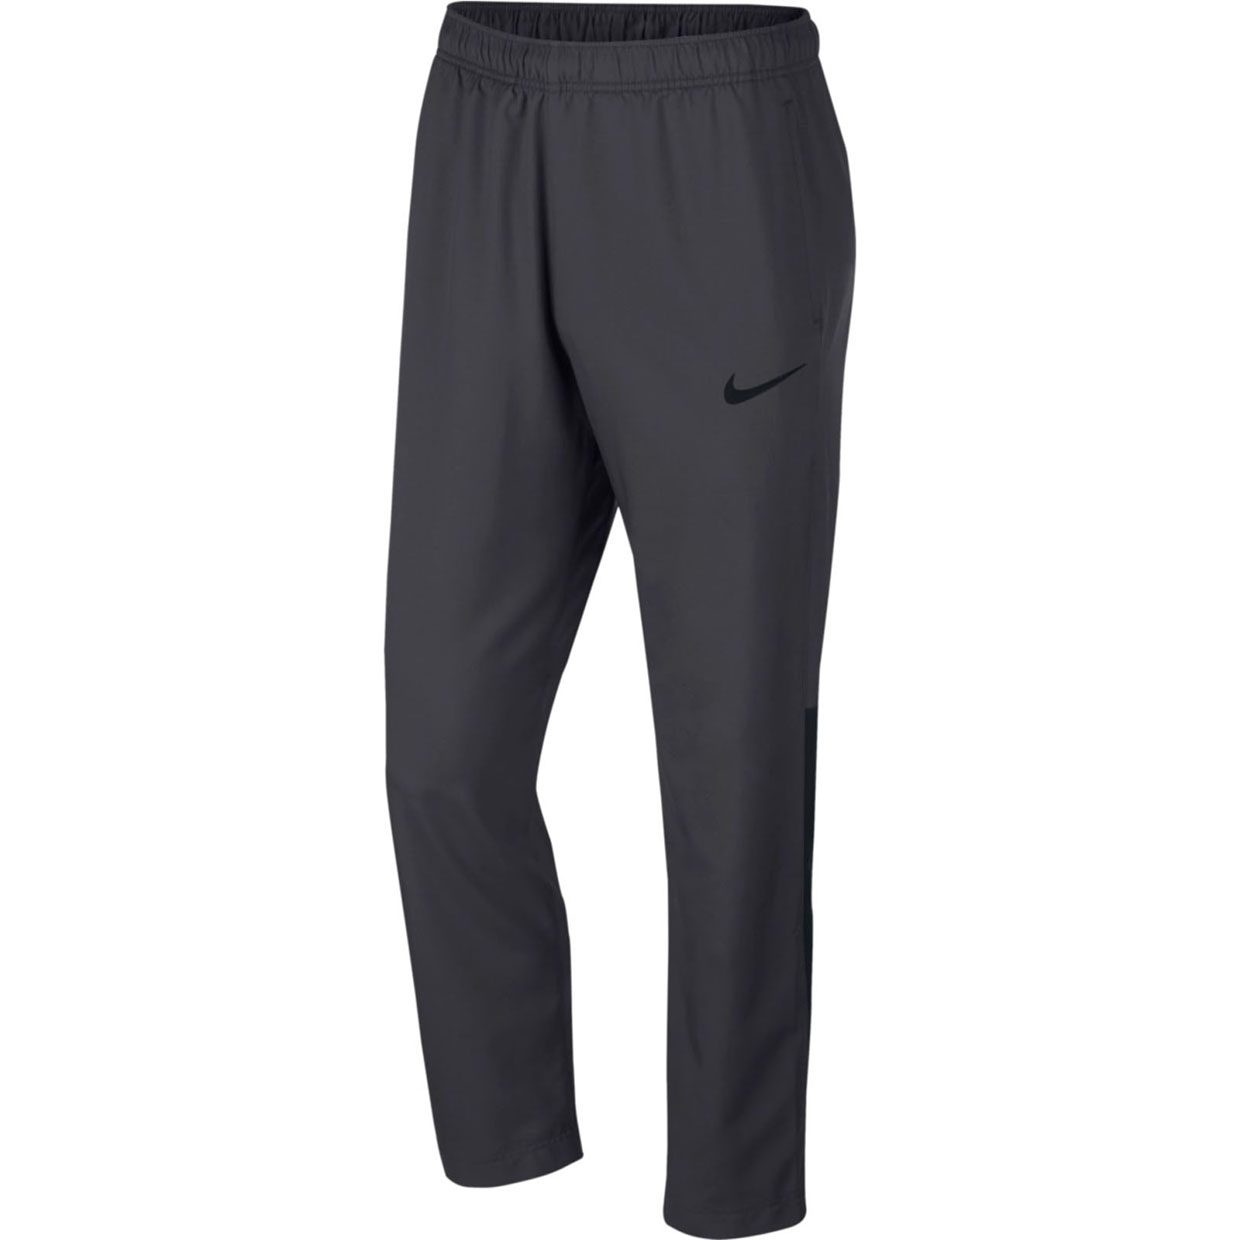 Мужские брюки Nike Dry Team Woven 927380-060